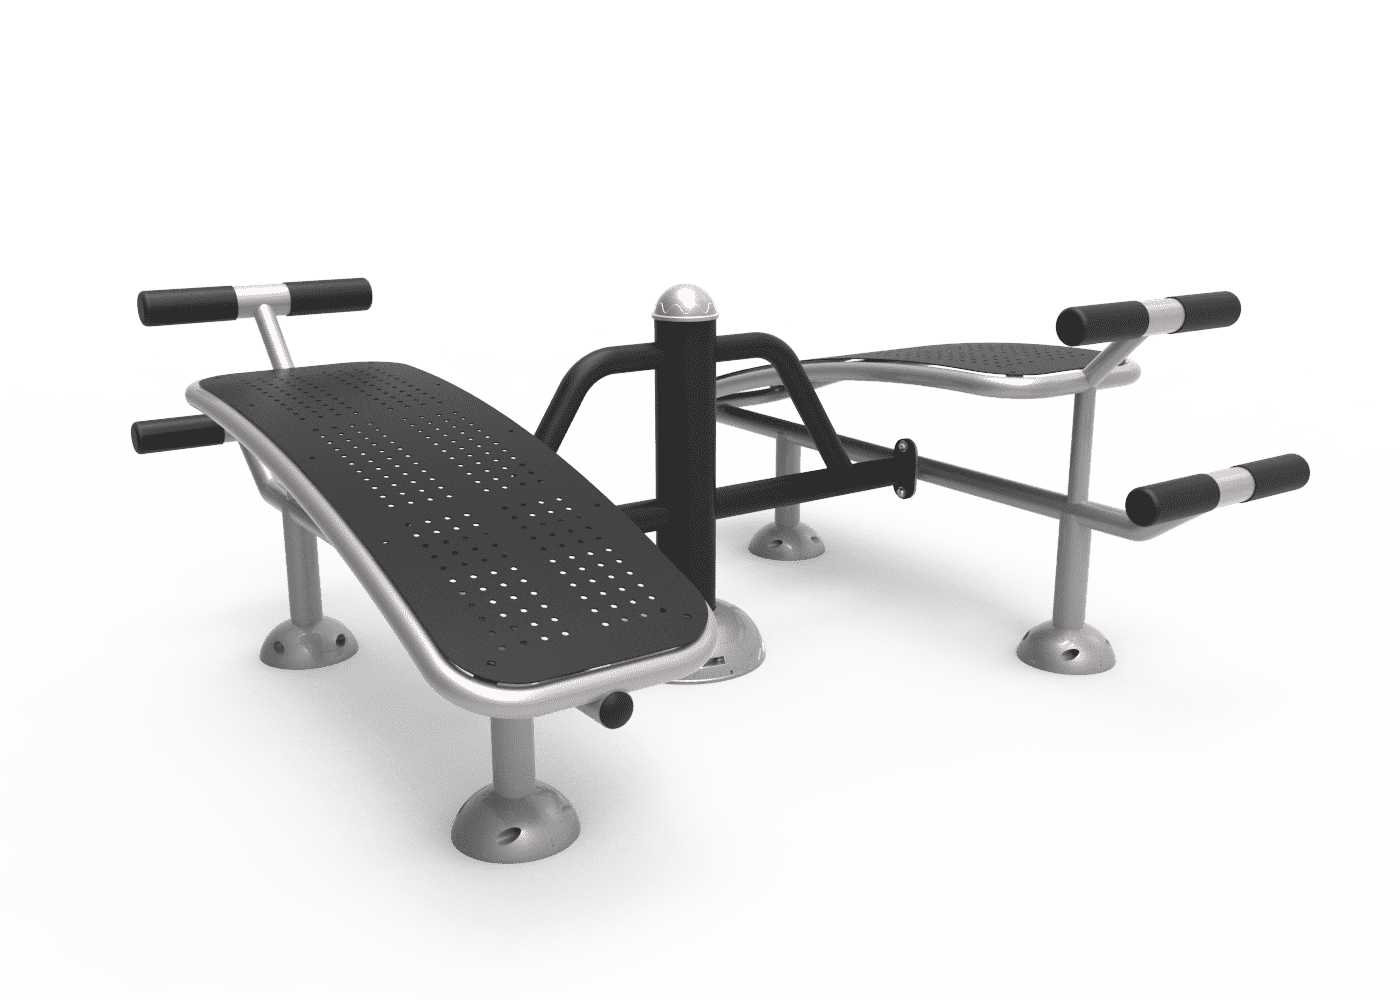 "Équipement de bancs pour parcours santé, conçu pour les abdominaux, en acier galvanisé, installé en extérieur dans un parc